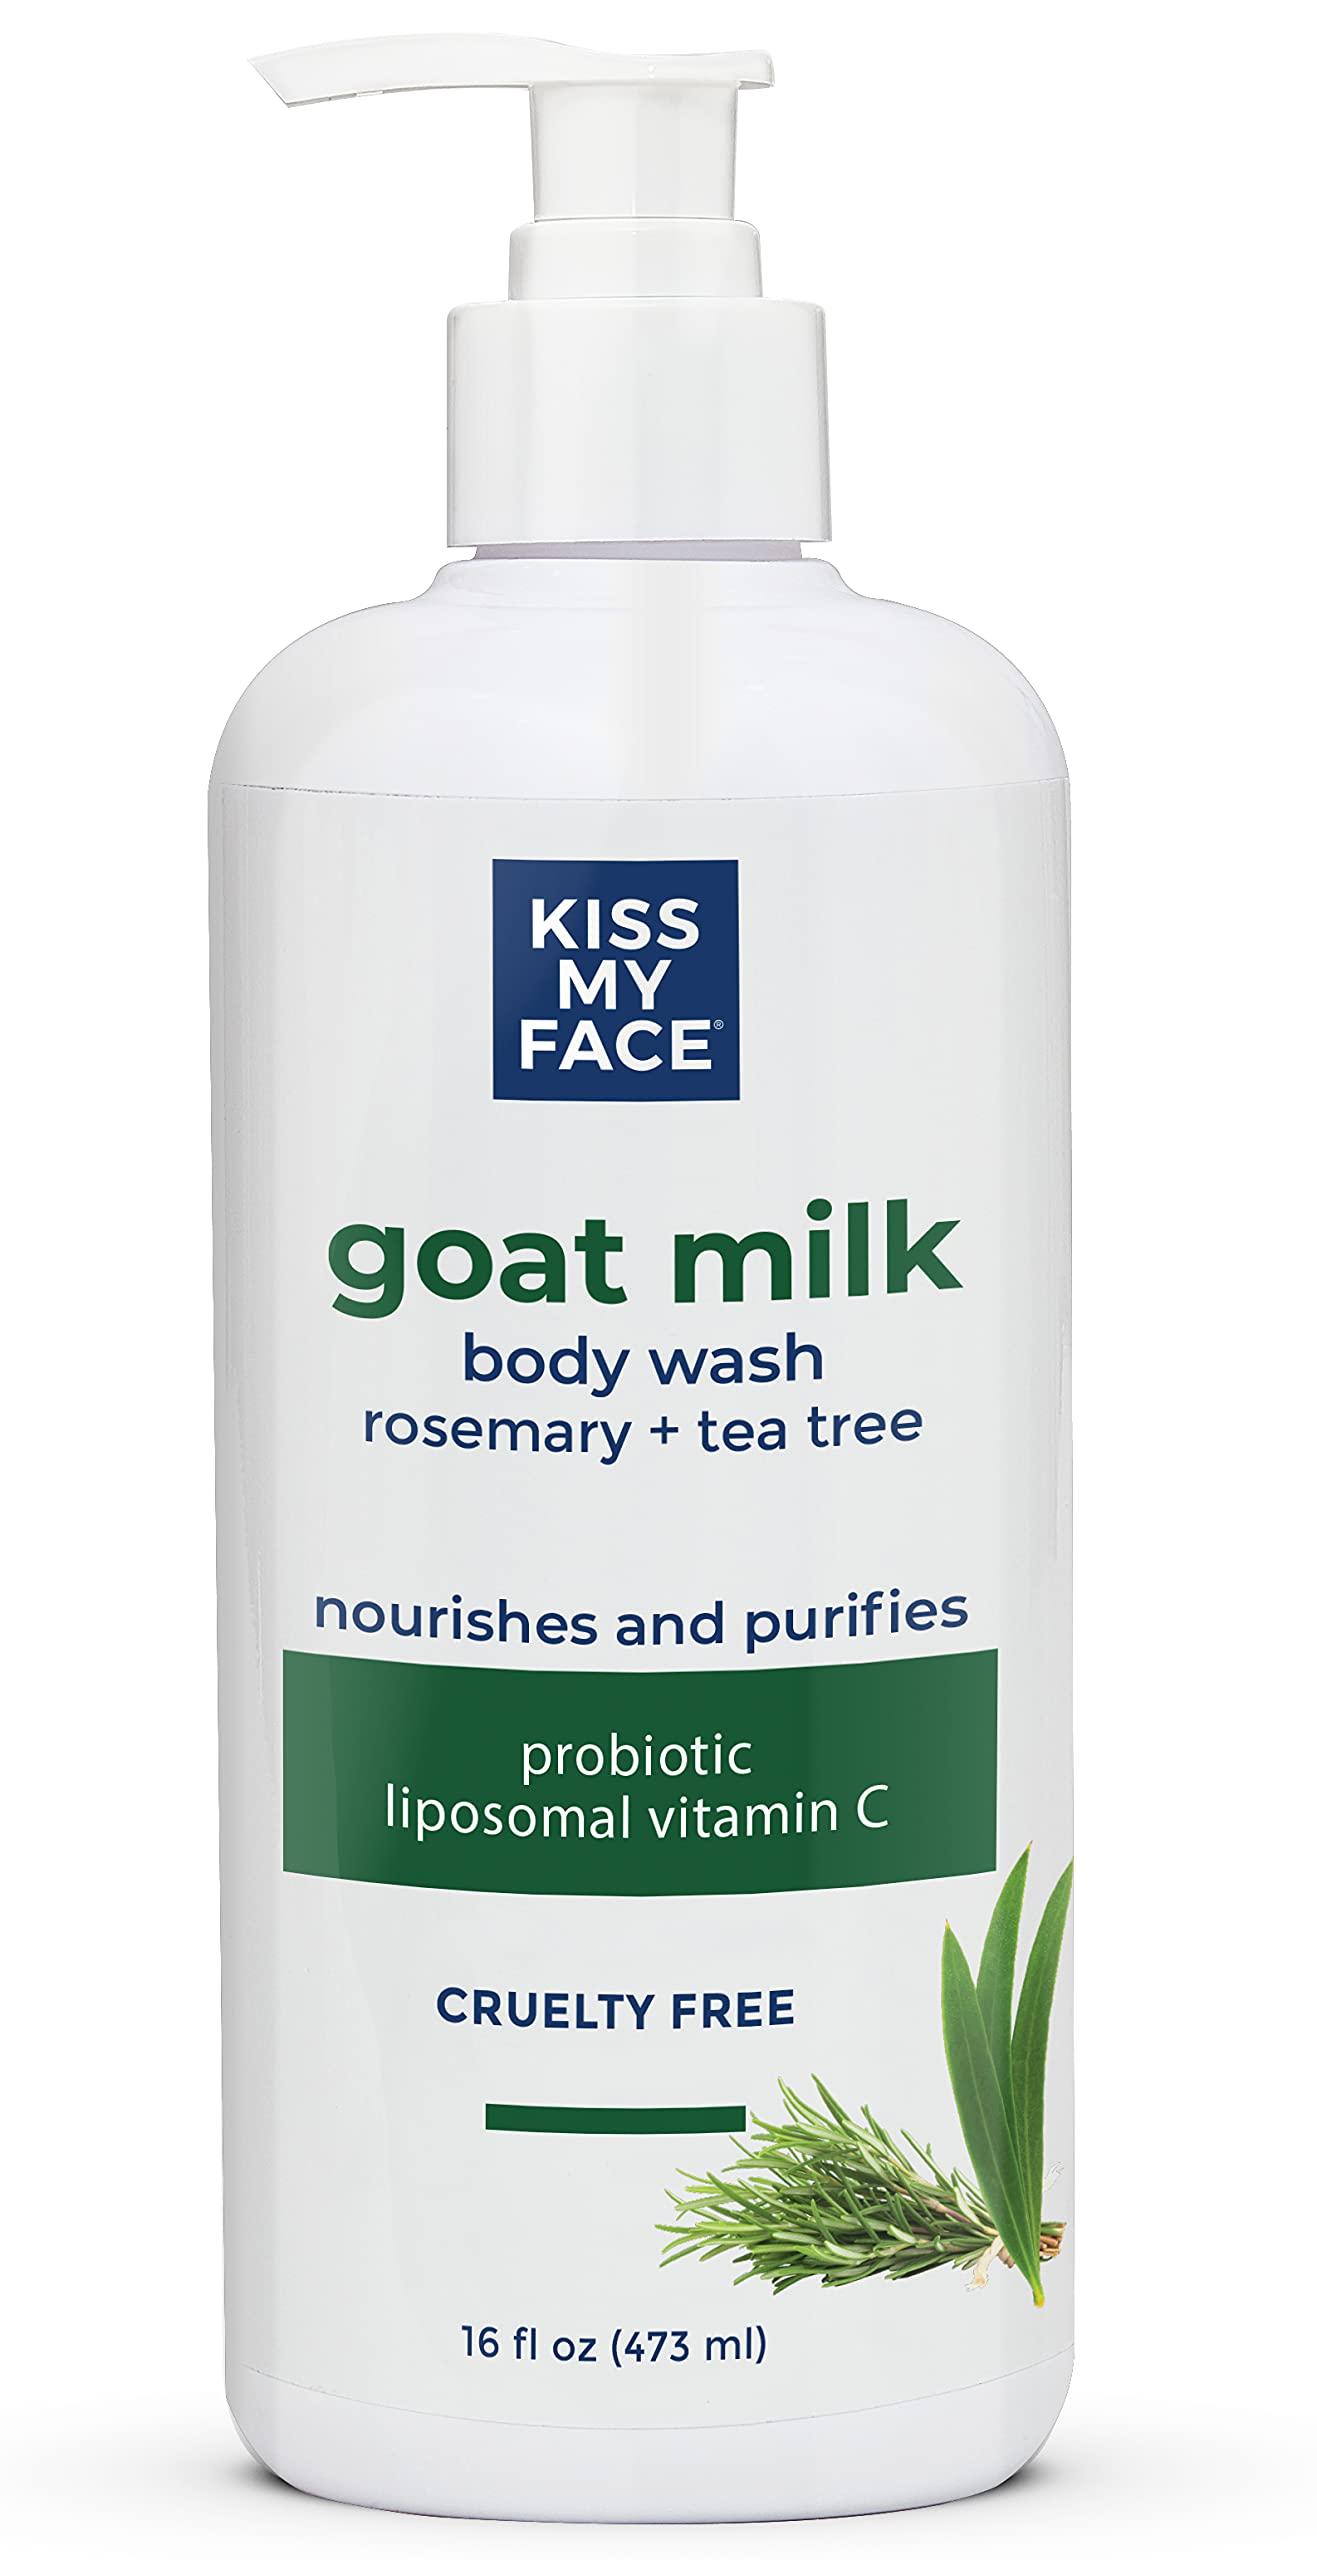 Kiss My Face Goat Milk Body Wash - Rosemary & Tea Tree Body Wash